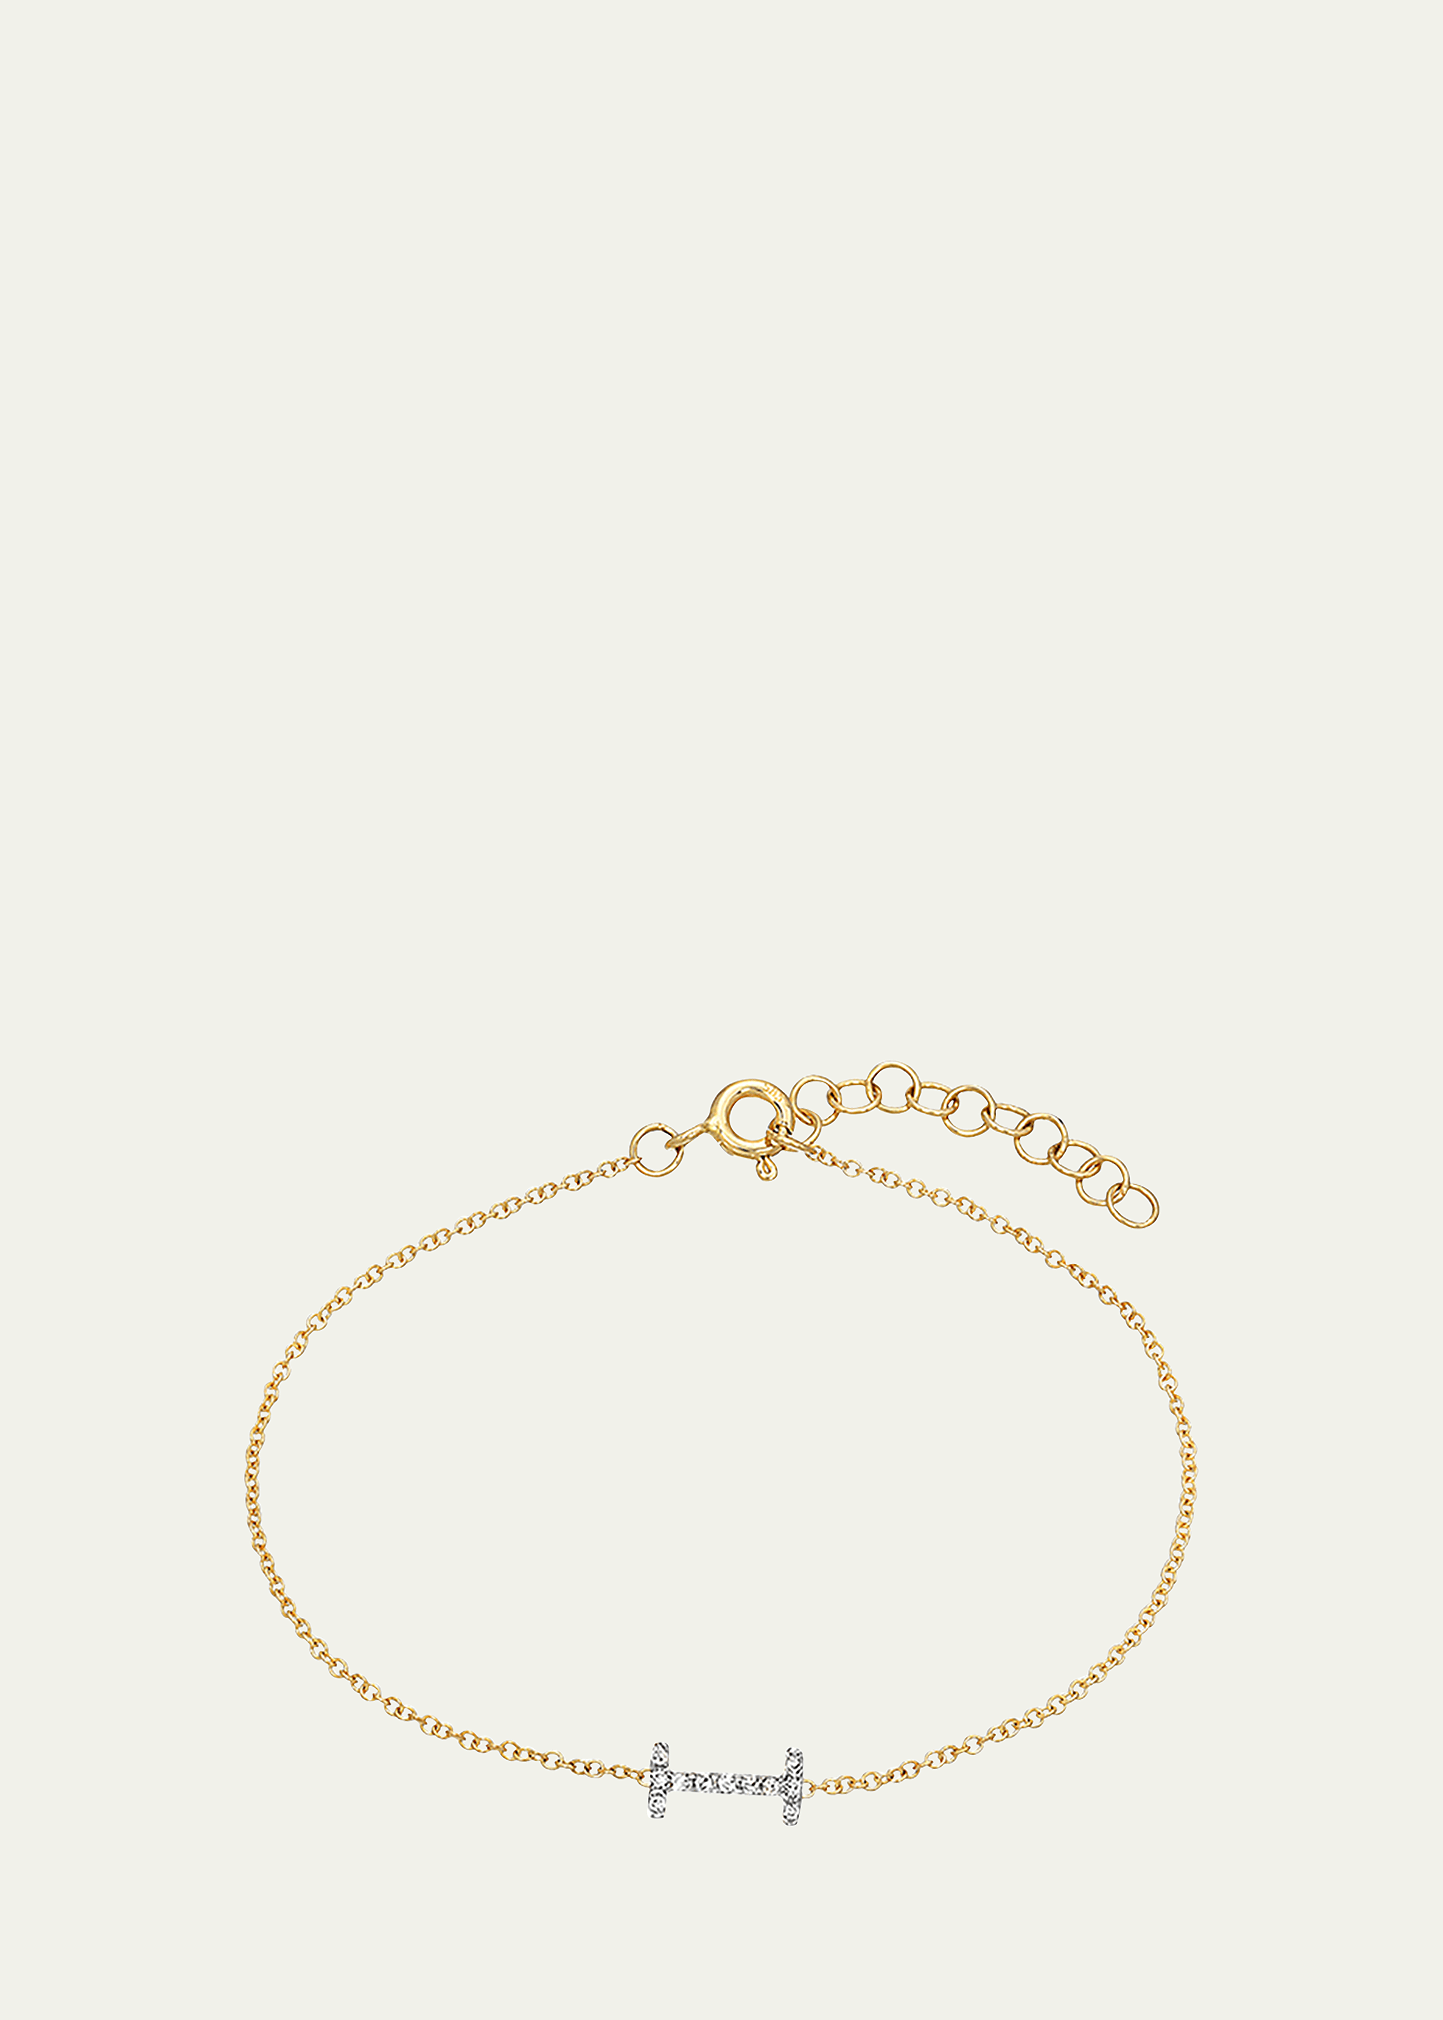 Zoe Lev Jewelry 14k Yellow Gold Diamond Initial X Bracelet